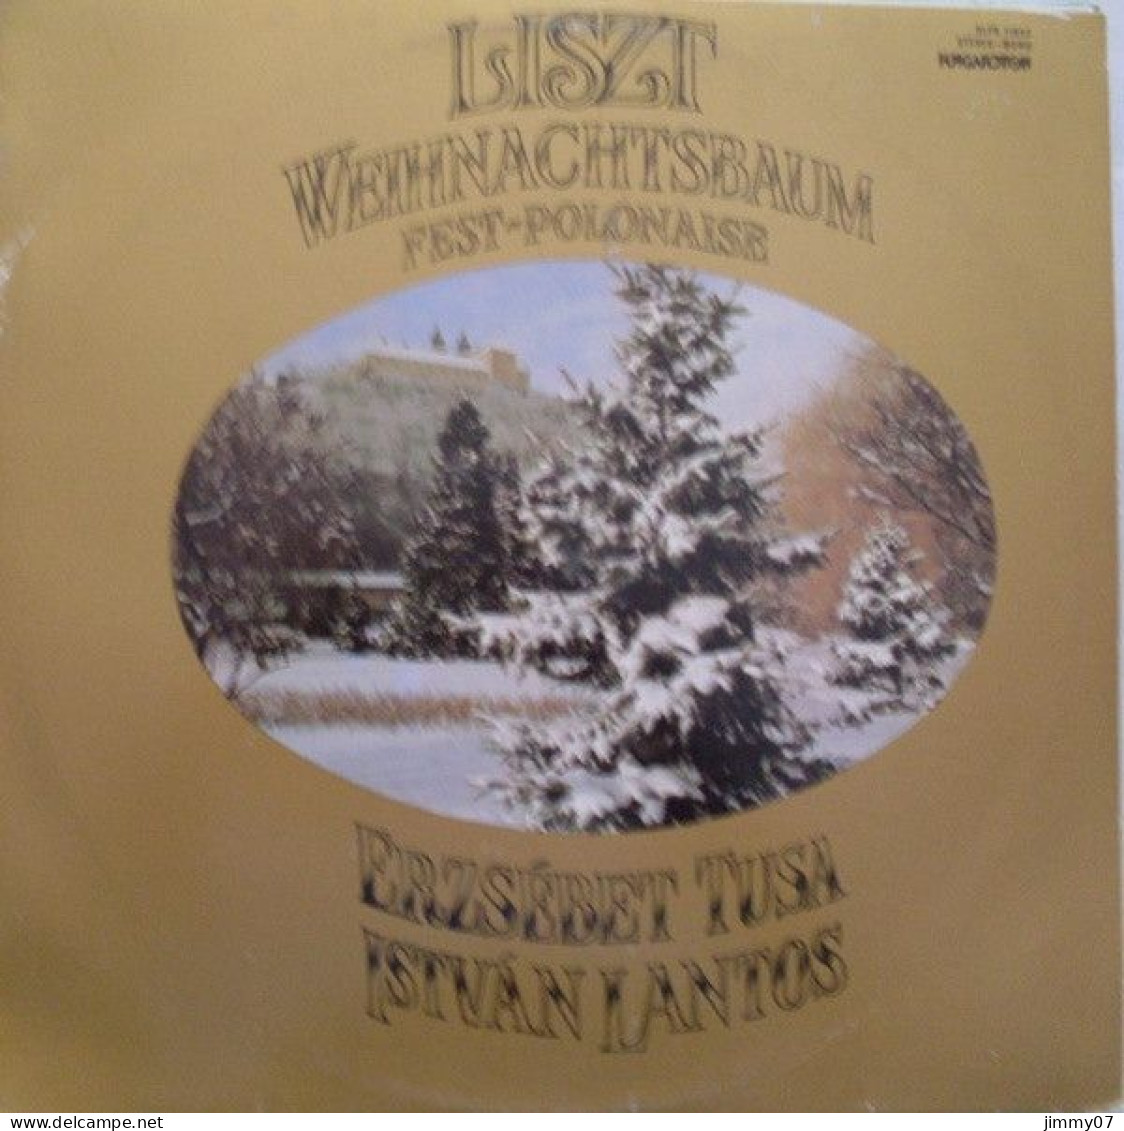 Franz Liszt, Erzsébet Tusa*, István Lantos* - Weihnachtsbaum - Fest-Polonaise (LP, Album) - Clásica